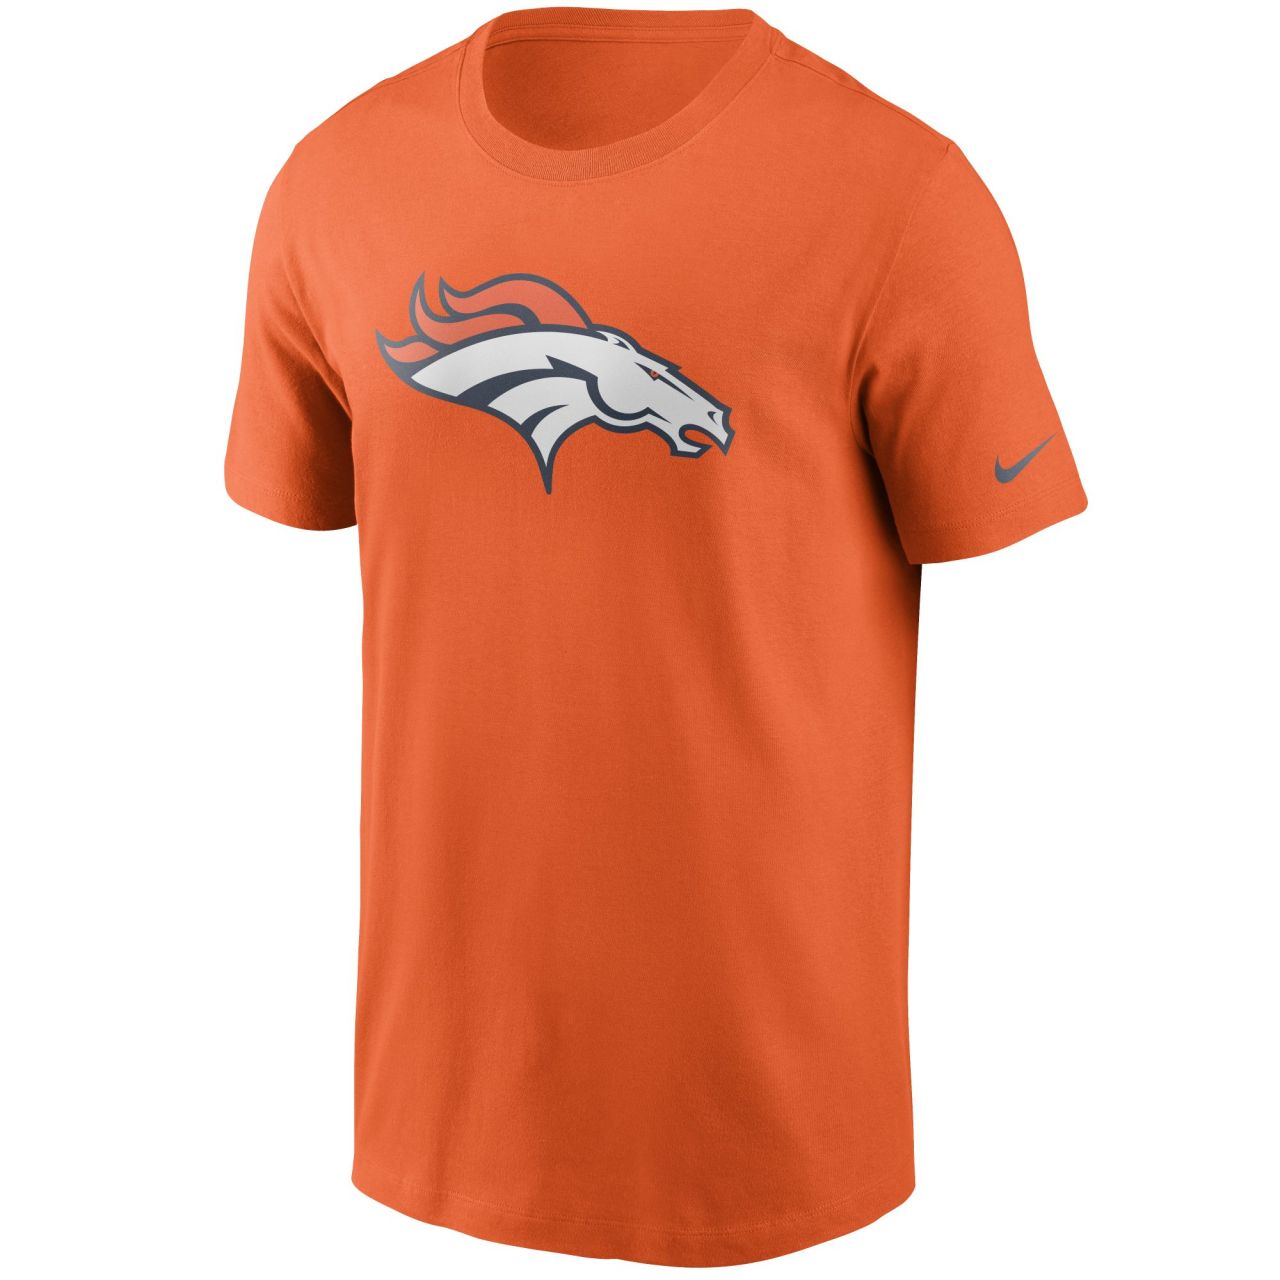 amfoo - Nike NFL Essential Shirt - Denver Broncos orange